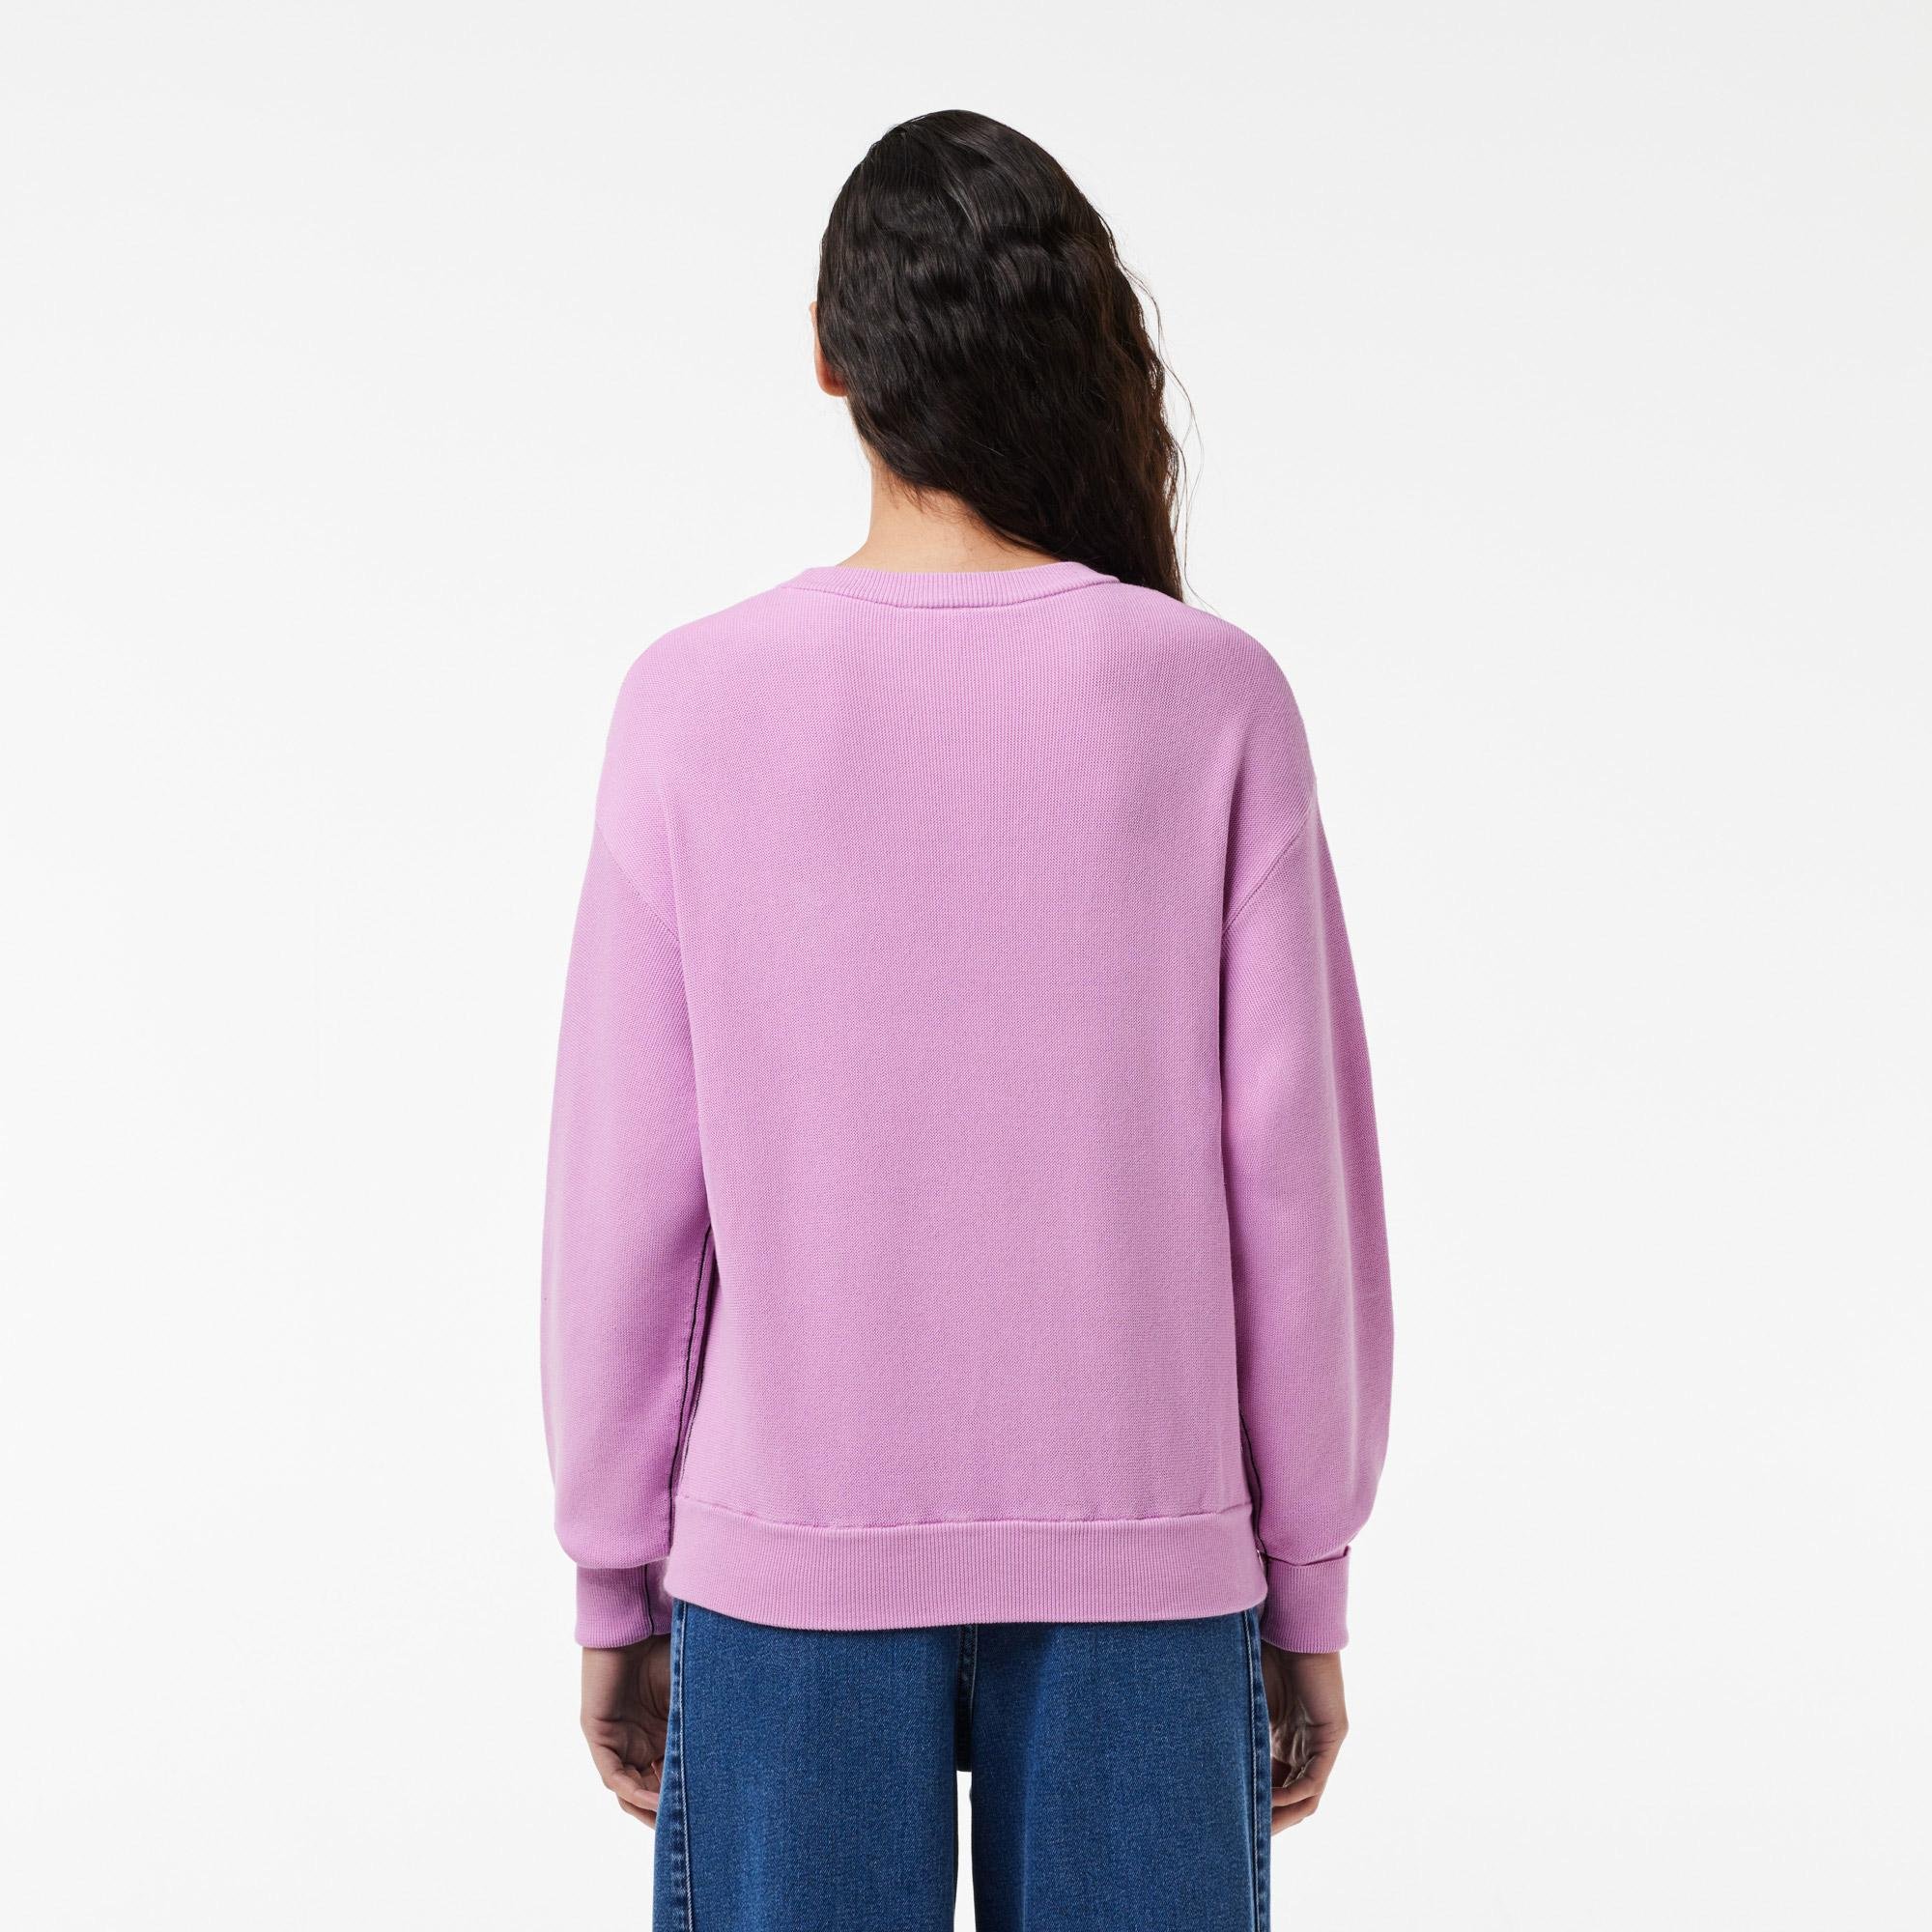 Lacoste damski sweter z okrągłym dekoltem z bawełny organicznej